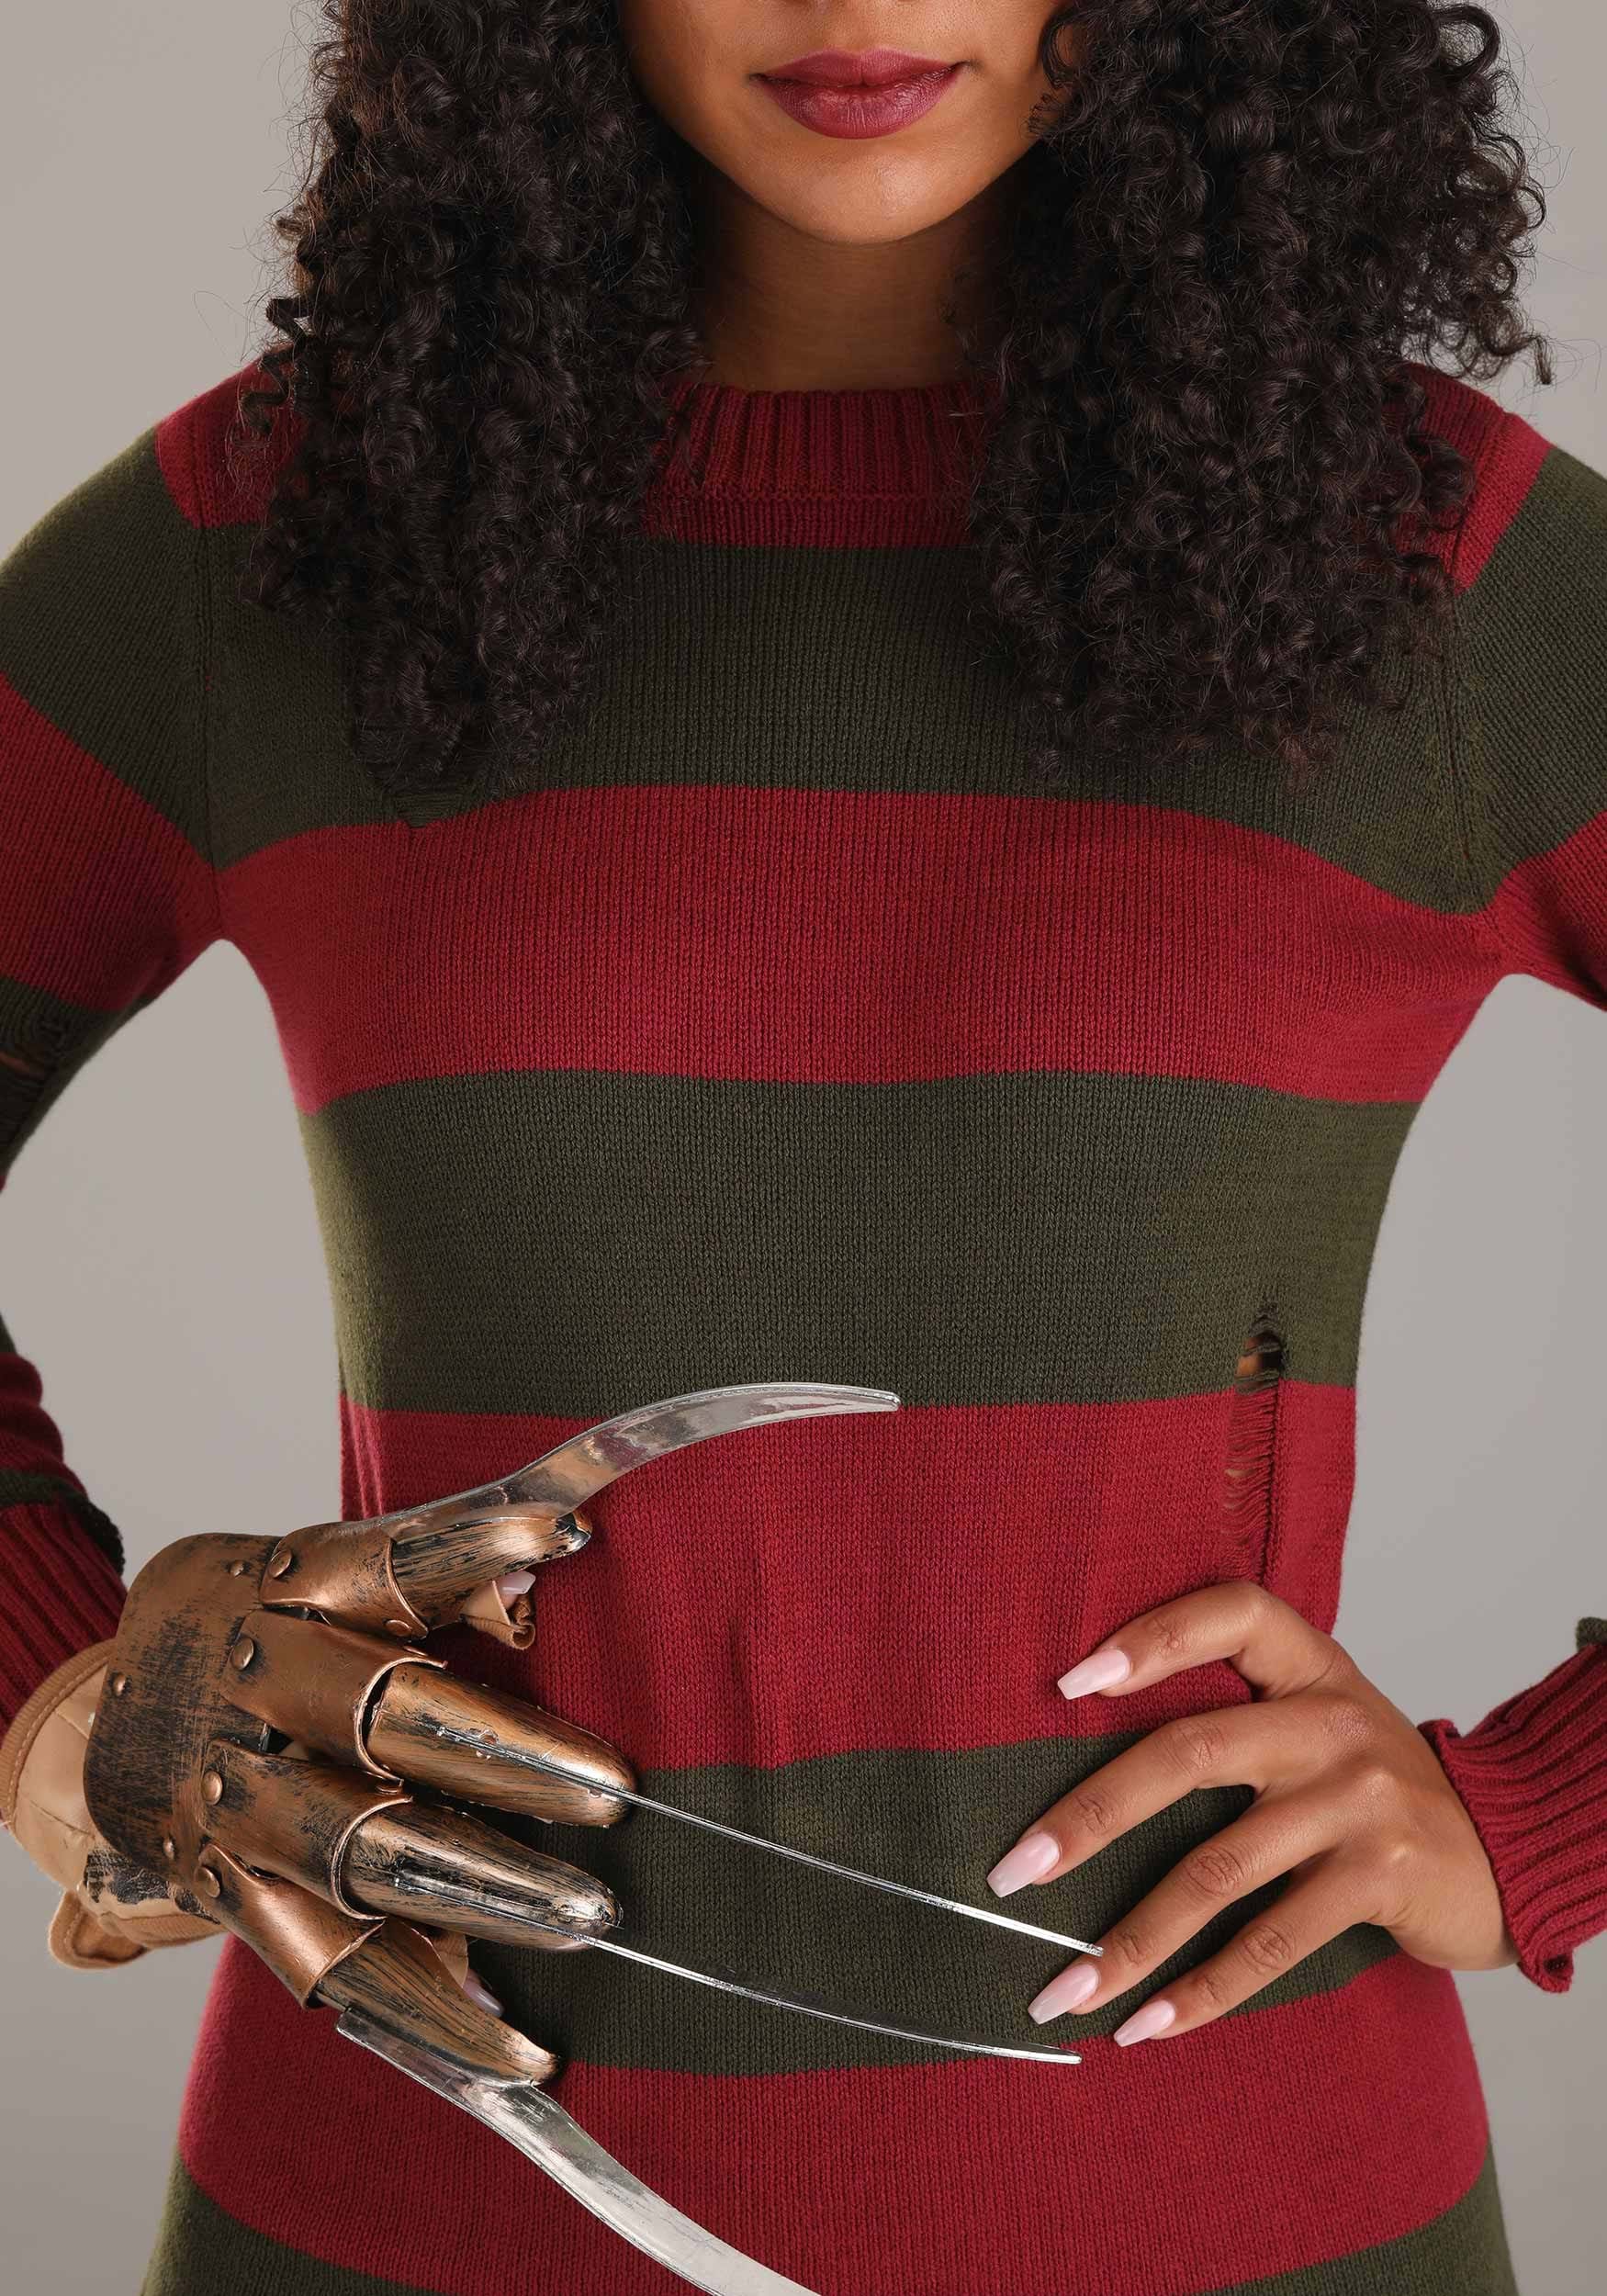 Freddy Krueger Plus Size Fancy Dress Costume Dress For Adults , Horror Movie Fancy Dress Costumes